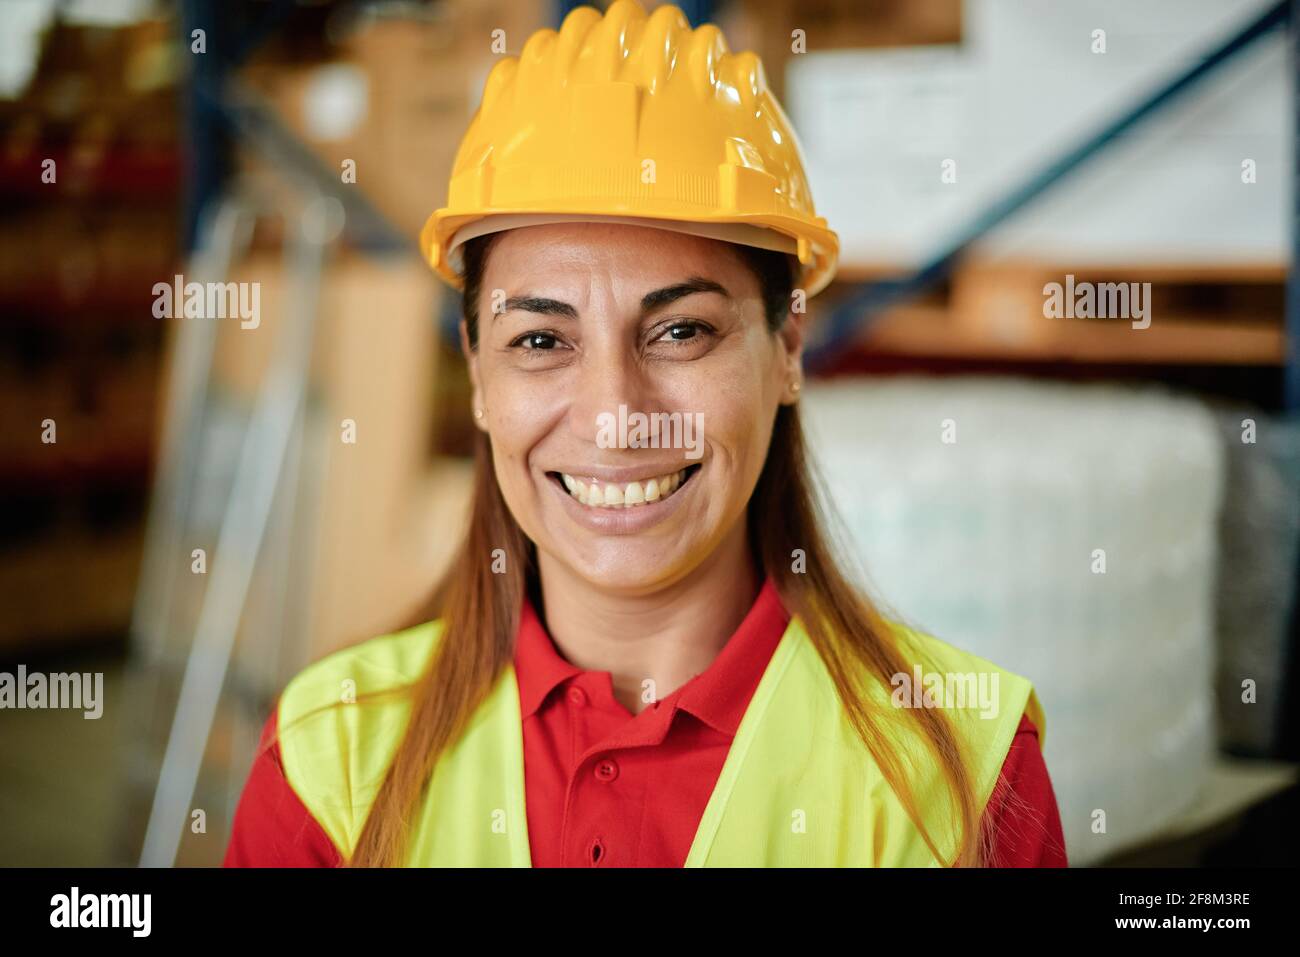 Portrait d'une femme de travail de race blanche d'adulte heureuse regardant la caméra à l'intérieur d'un entrepôt portant un casque de sécurité et Vêtements de sécurité - concentrez-vous sur le visage Banque D'Images